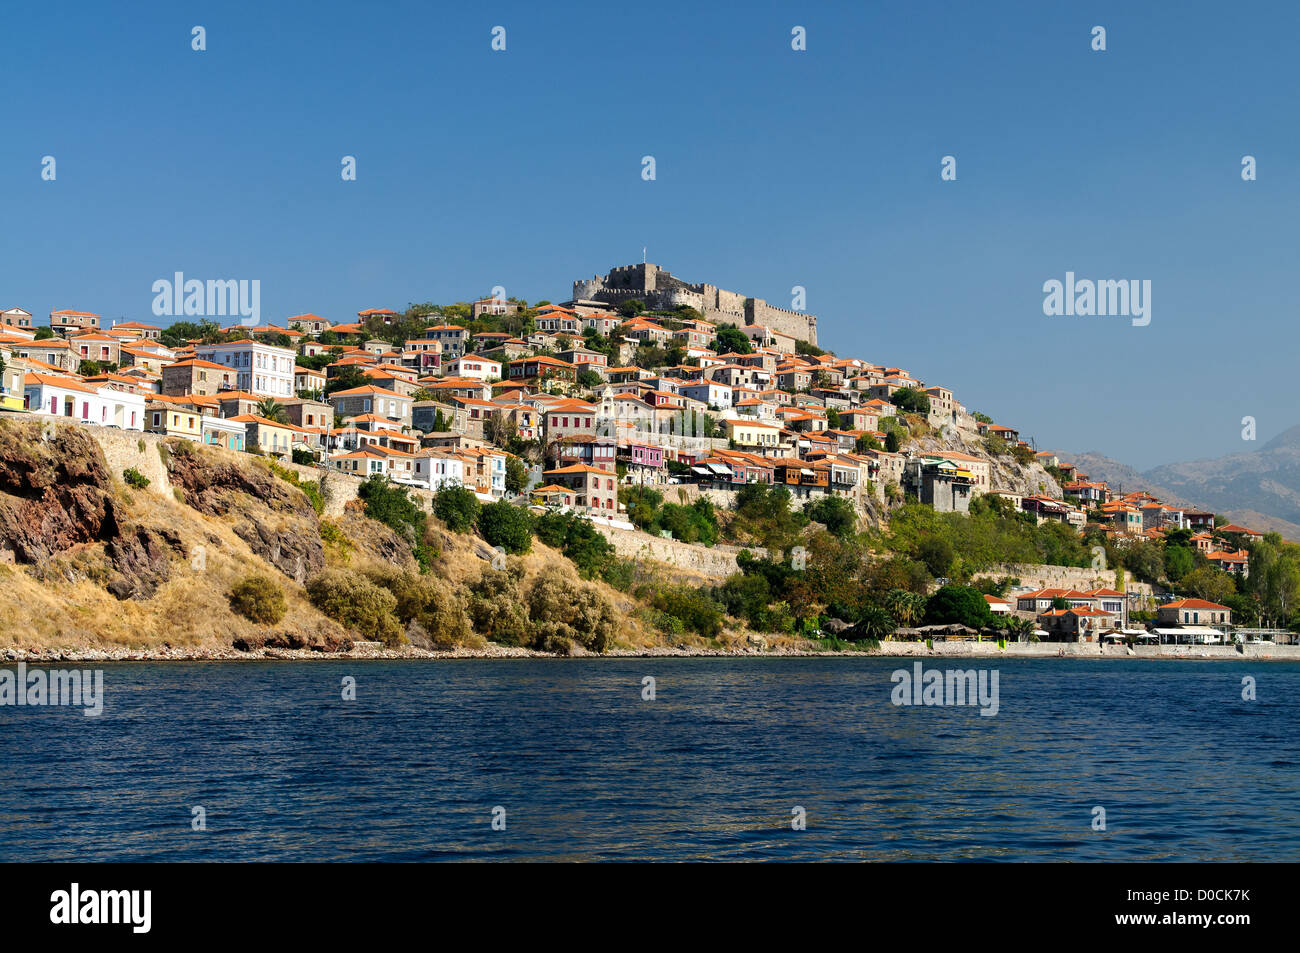 La ville grecque de Molyvos sur l'île de Lesbos, construit sur une colline Banque D'Images